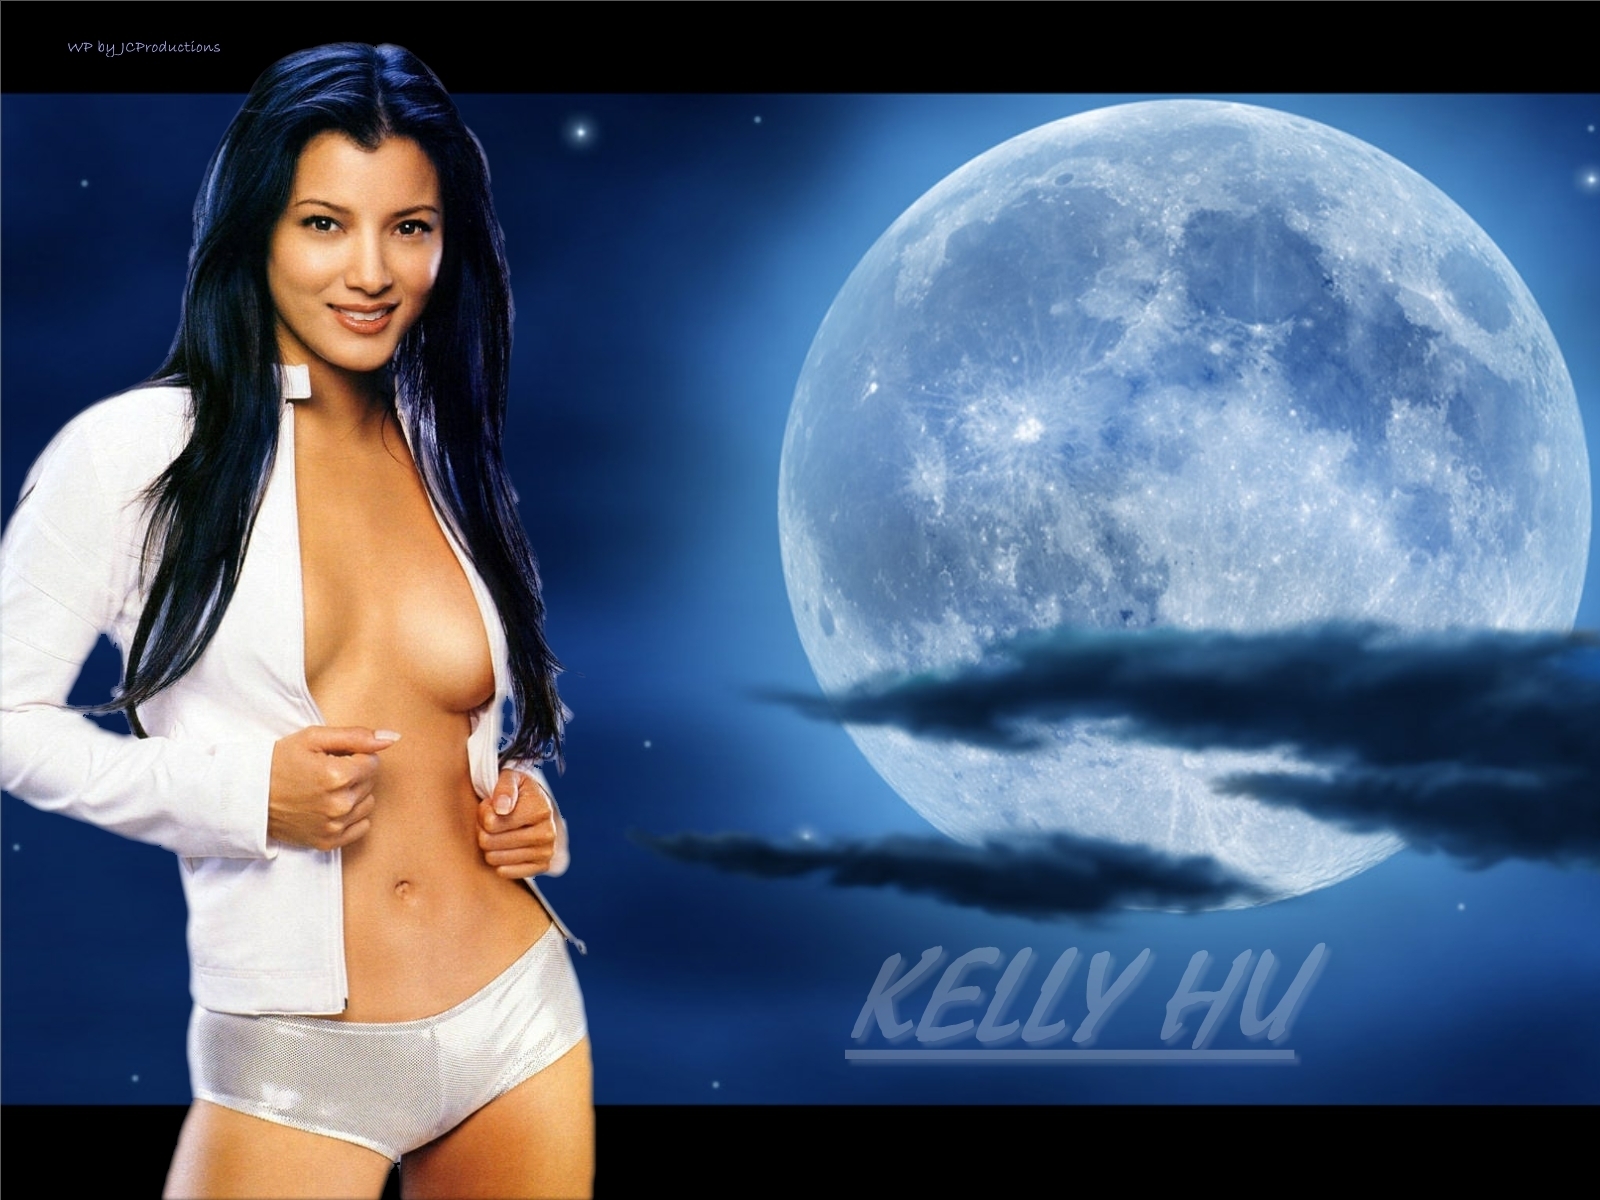 Kelly hu sexy pics